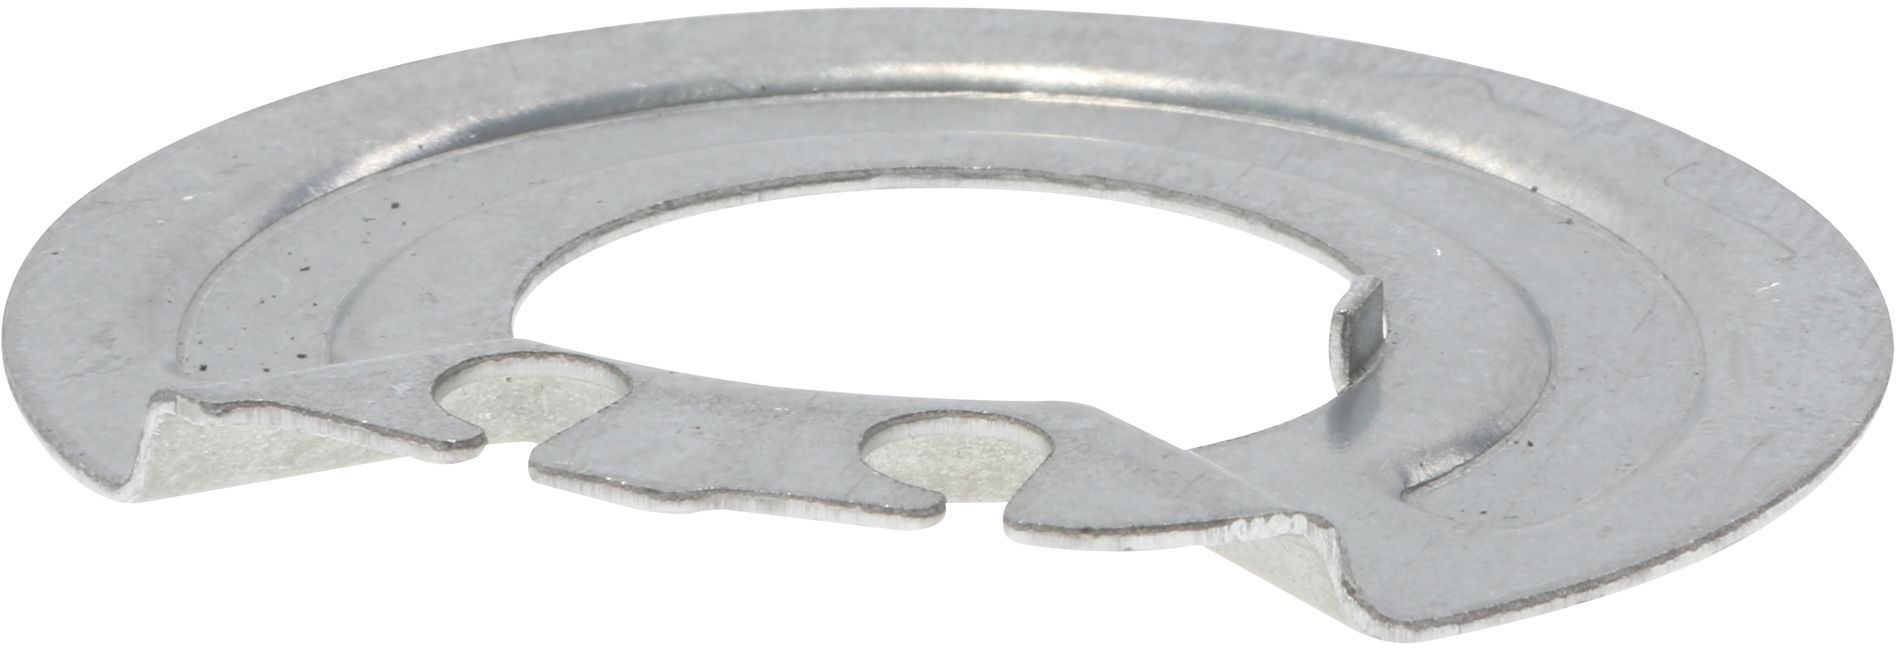 Металлическое кольцо горелки для встраиваемых газовых/комбинированных, варочных панелей, малое